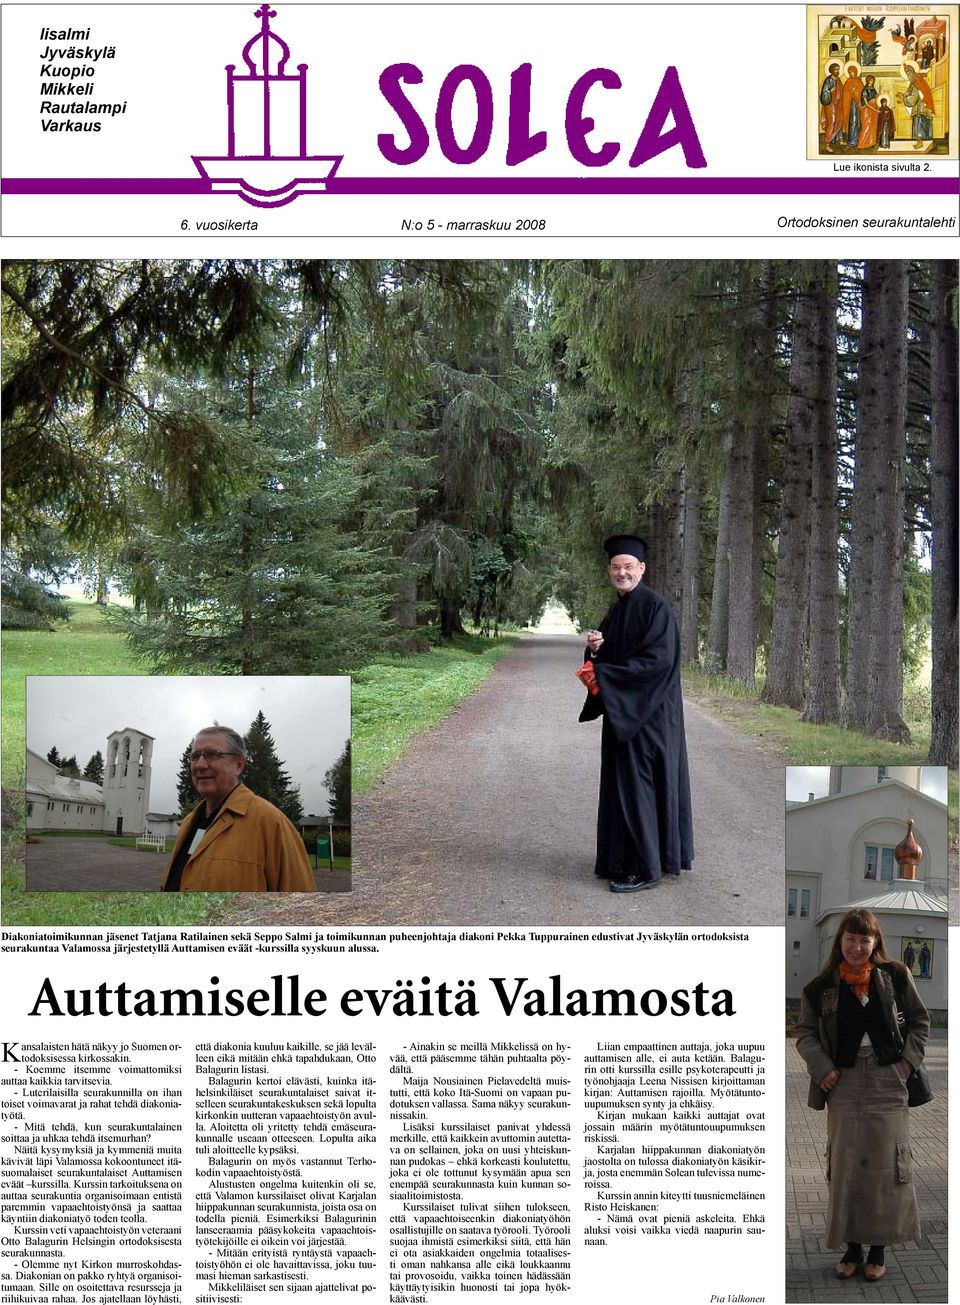 Jyväskylän ortodoksista seurakuntaa Valamossa järjestetyllä Auttamisen eväät -kurssilla syyskuun alussa. Auttamiselle eväitä Valamosta Kansalaisten hätä näkyy jo Suomen ortodoksisessa kirkossakin.